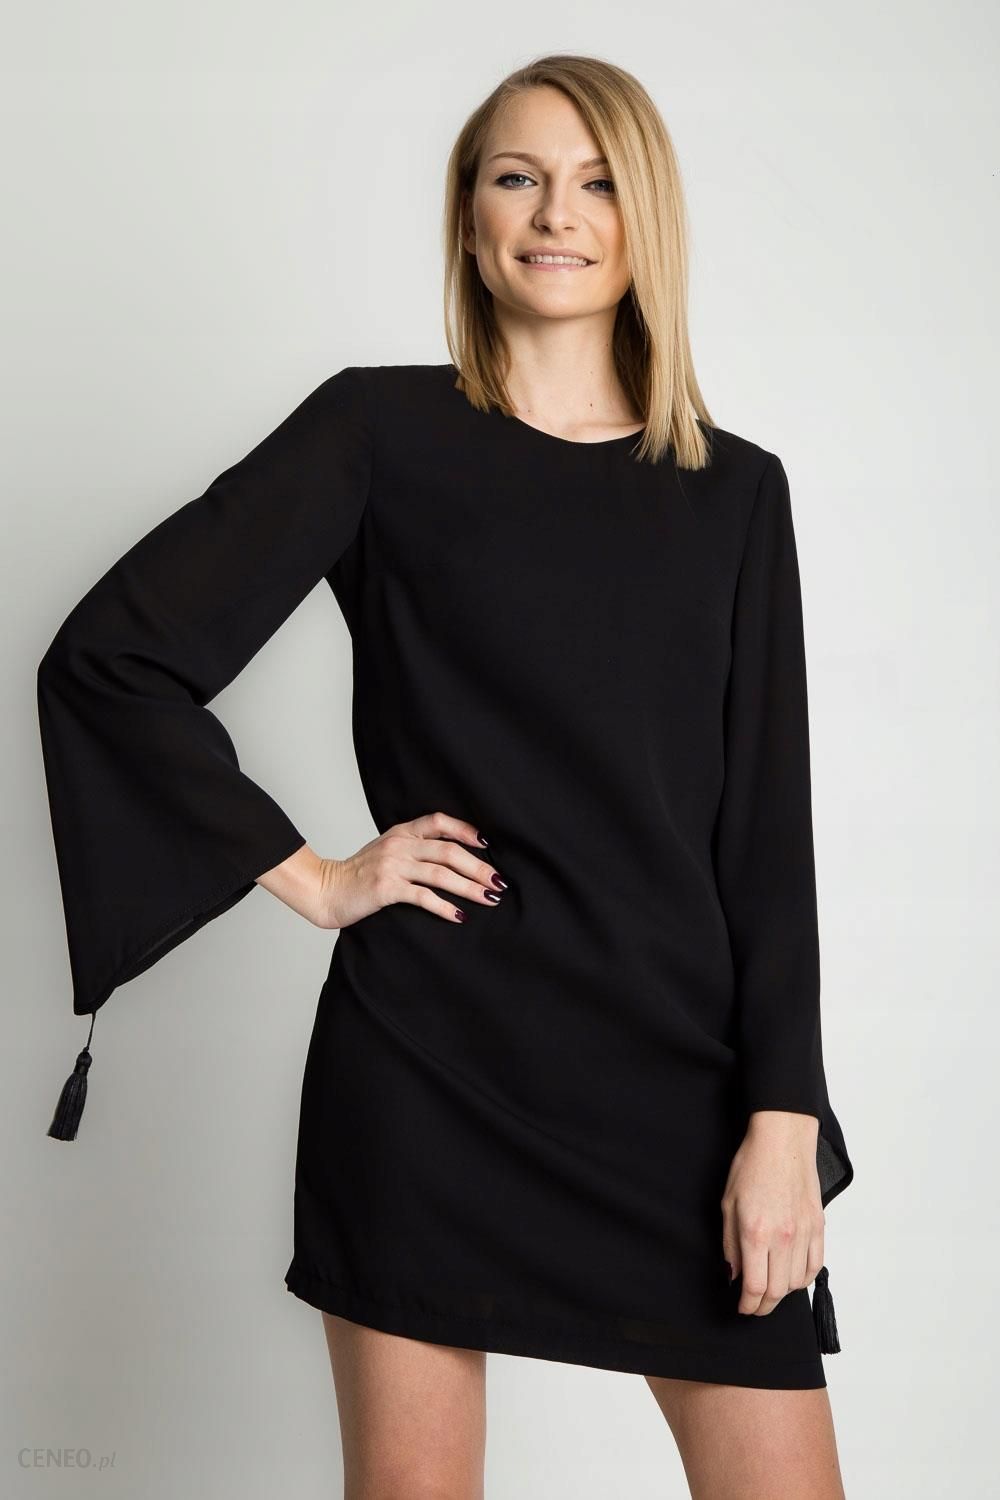 Czarna sukienka z szerokimi rękawami Bialcon - Ceny i opinie 